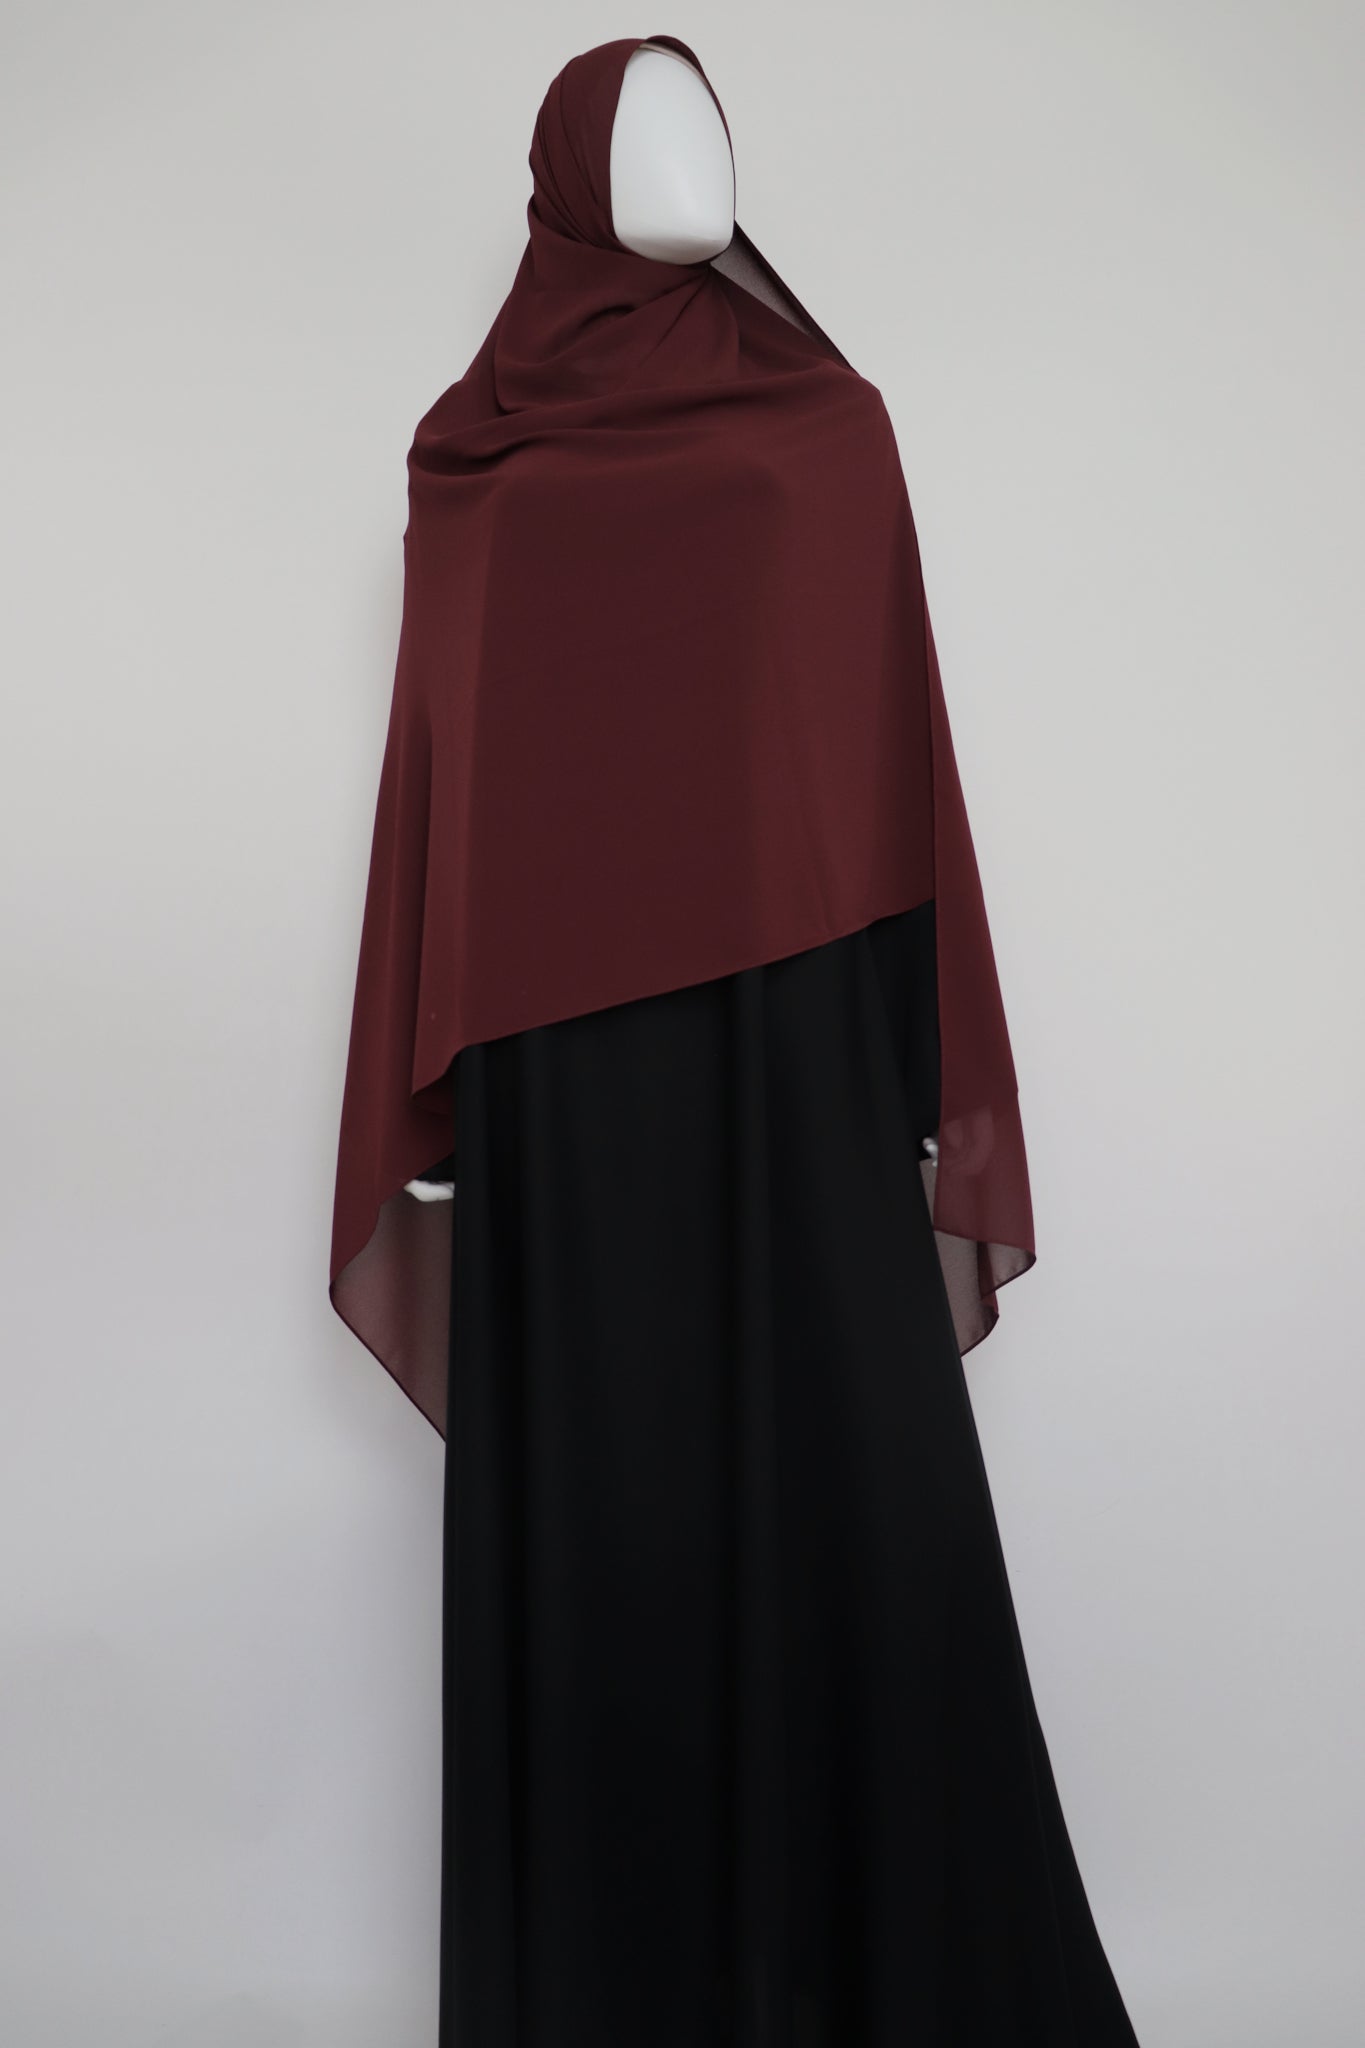 XL Premium Chiffon Hijab and Niqab Set - Burgundy